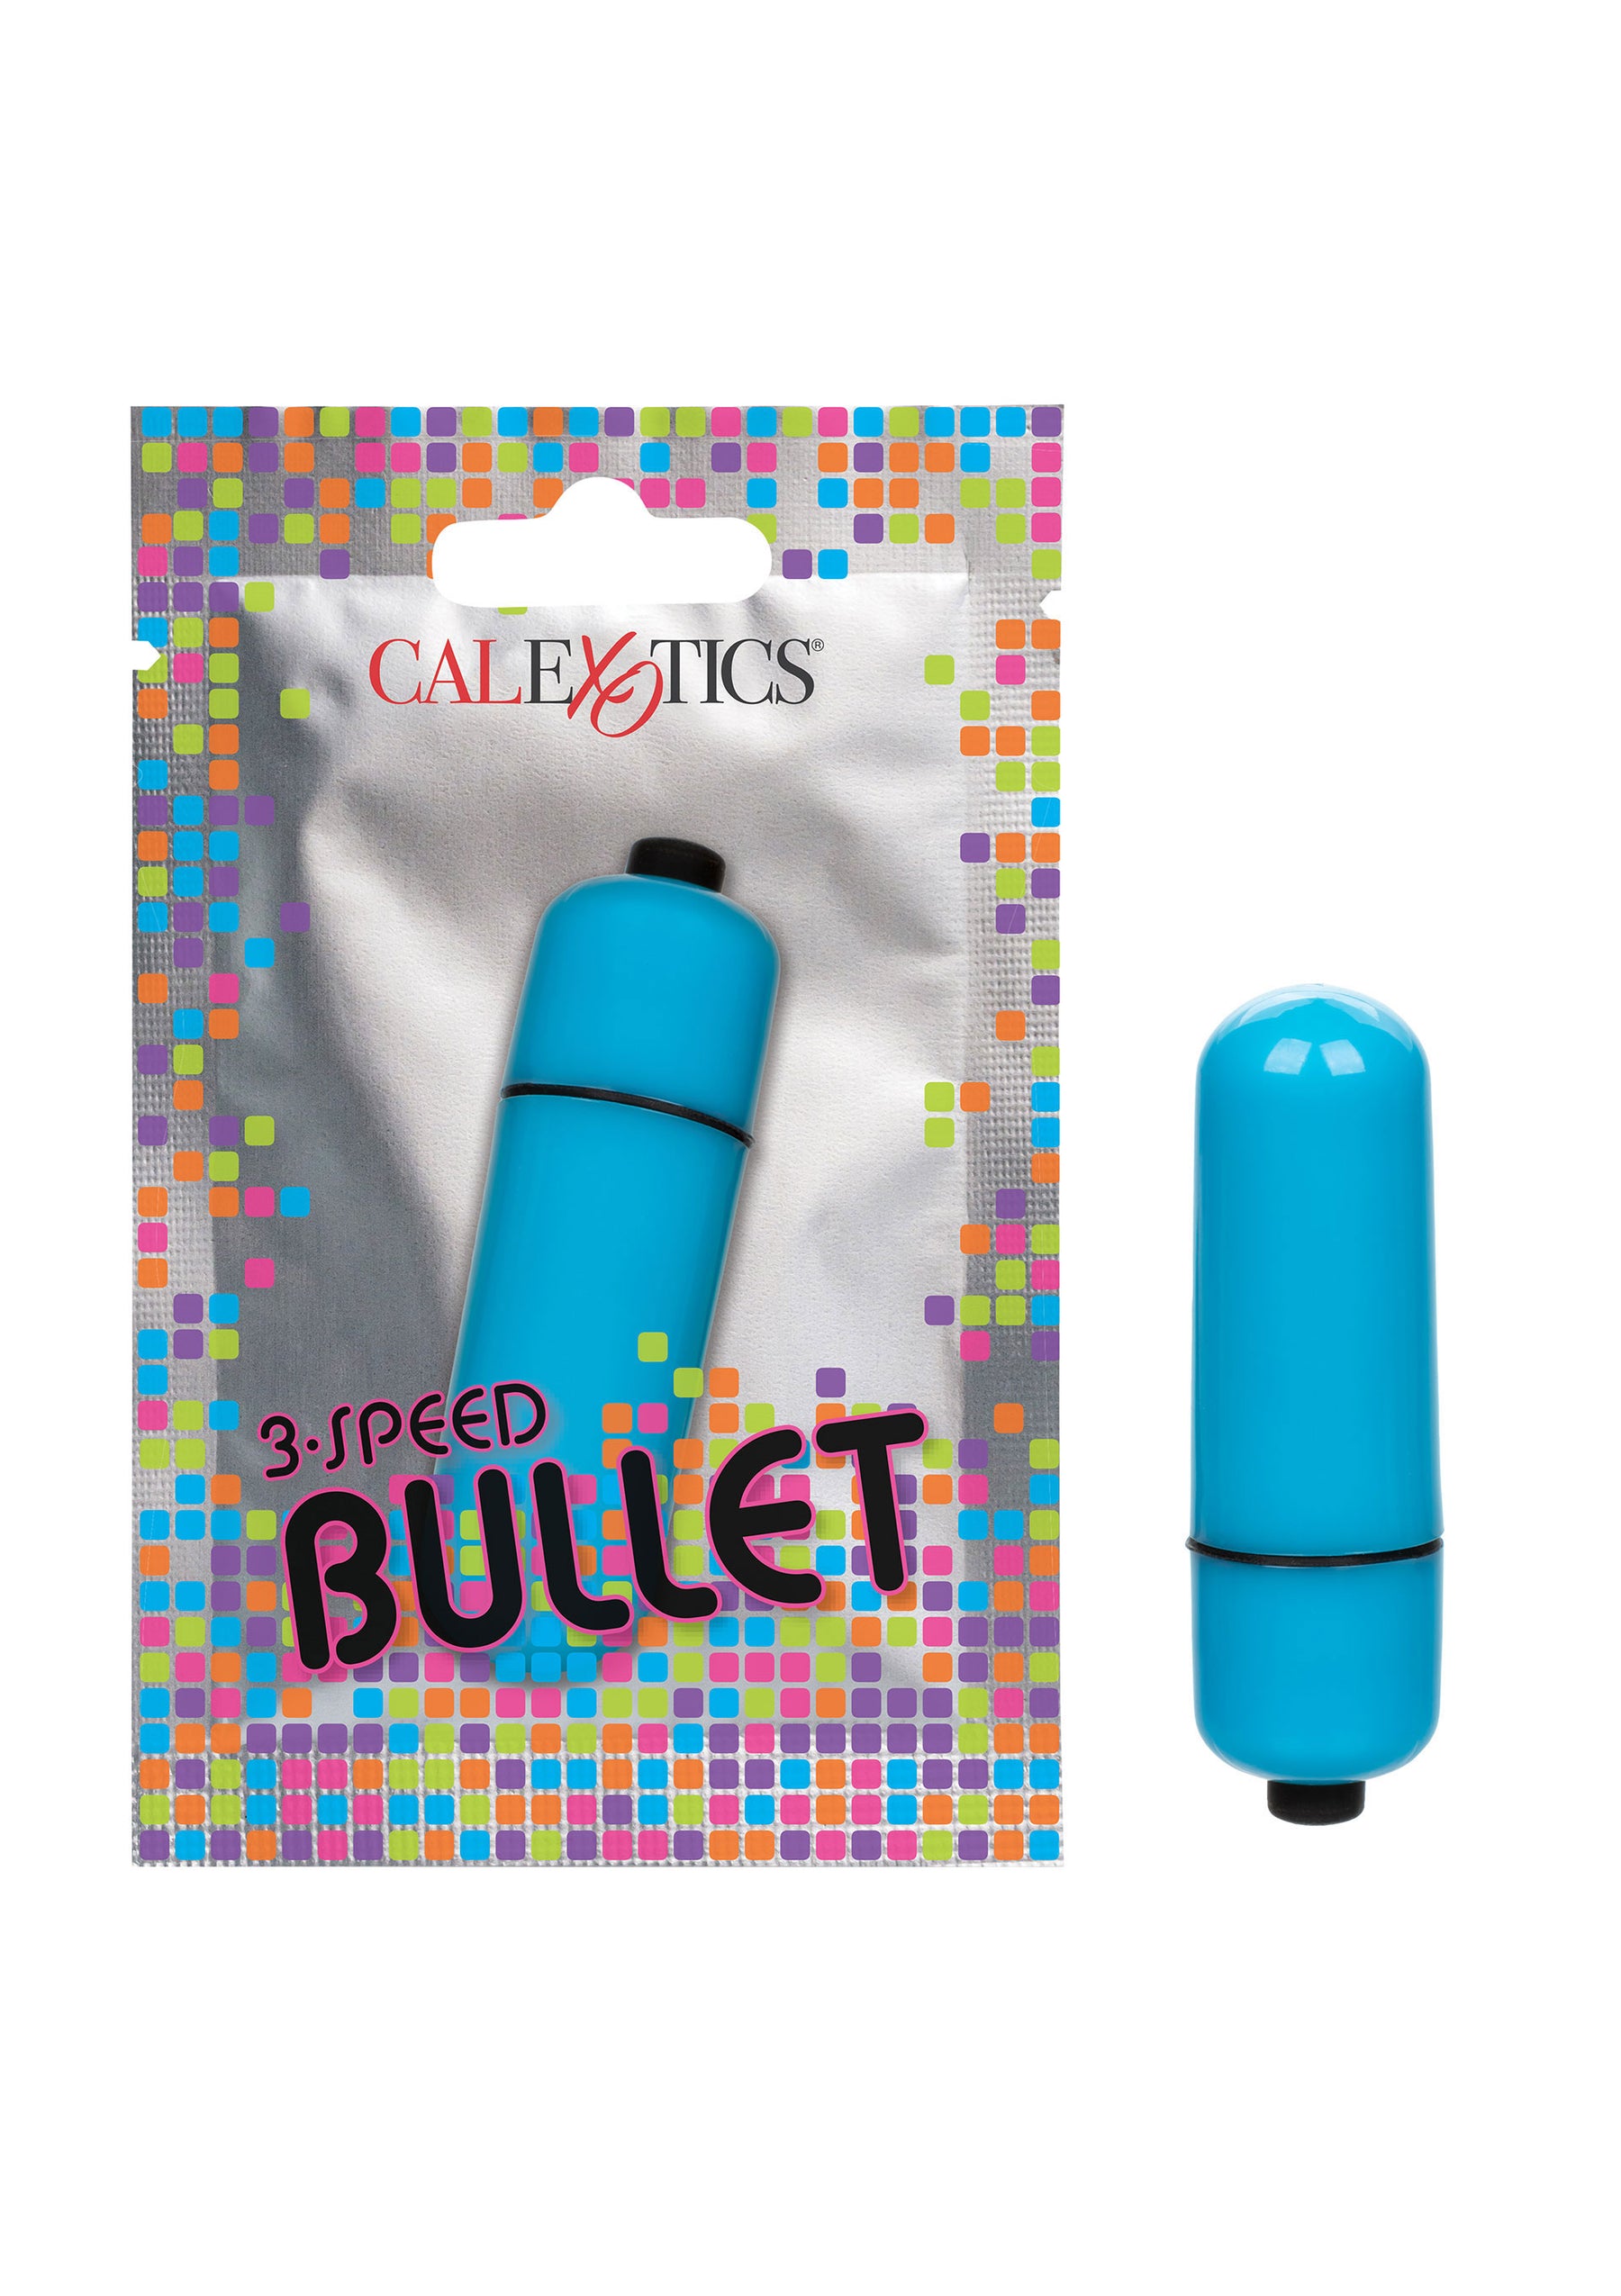 3-Speed Bullet